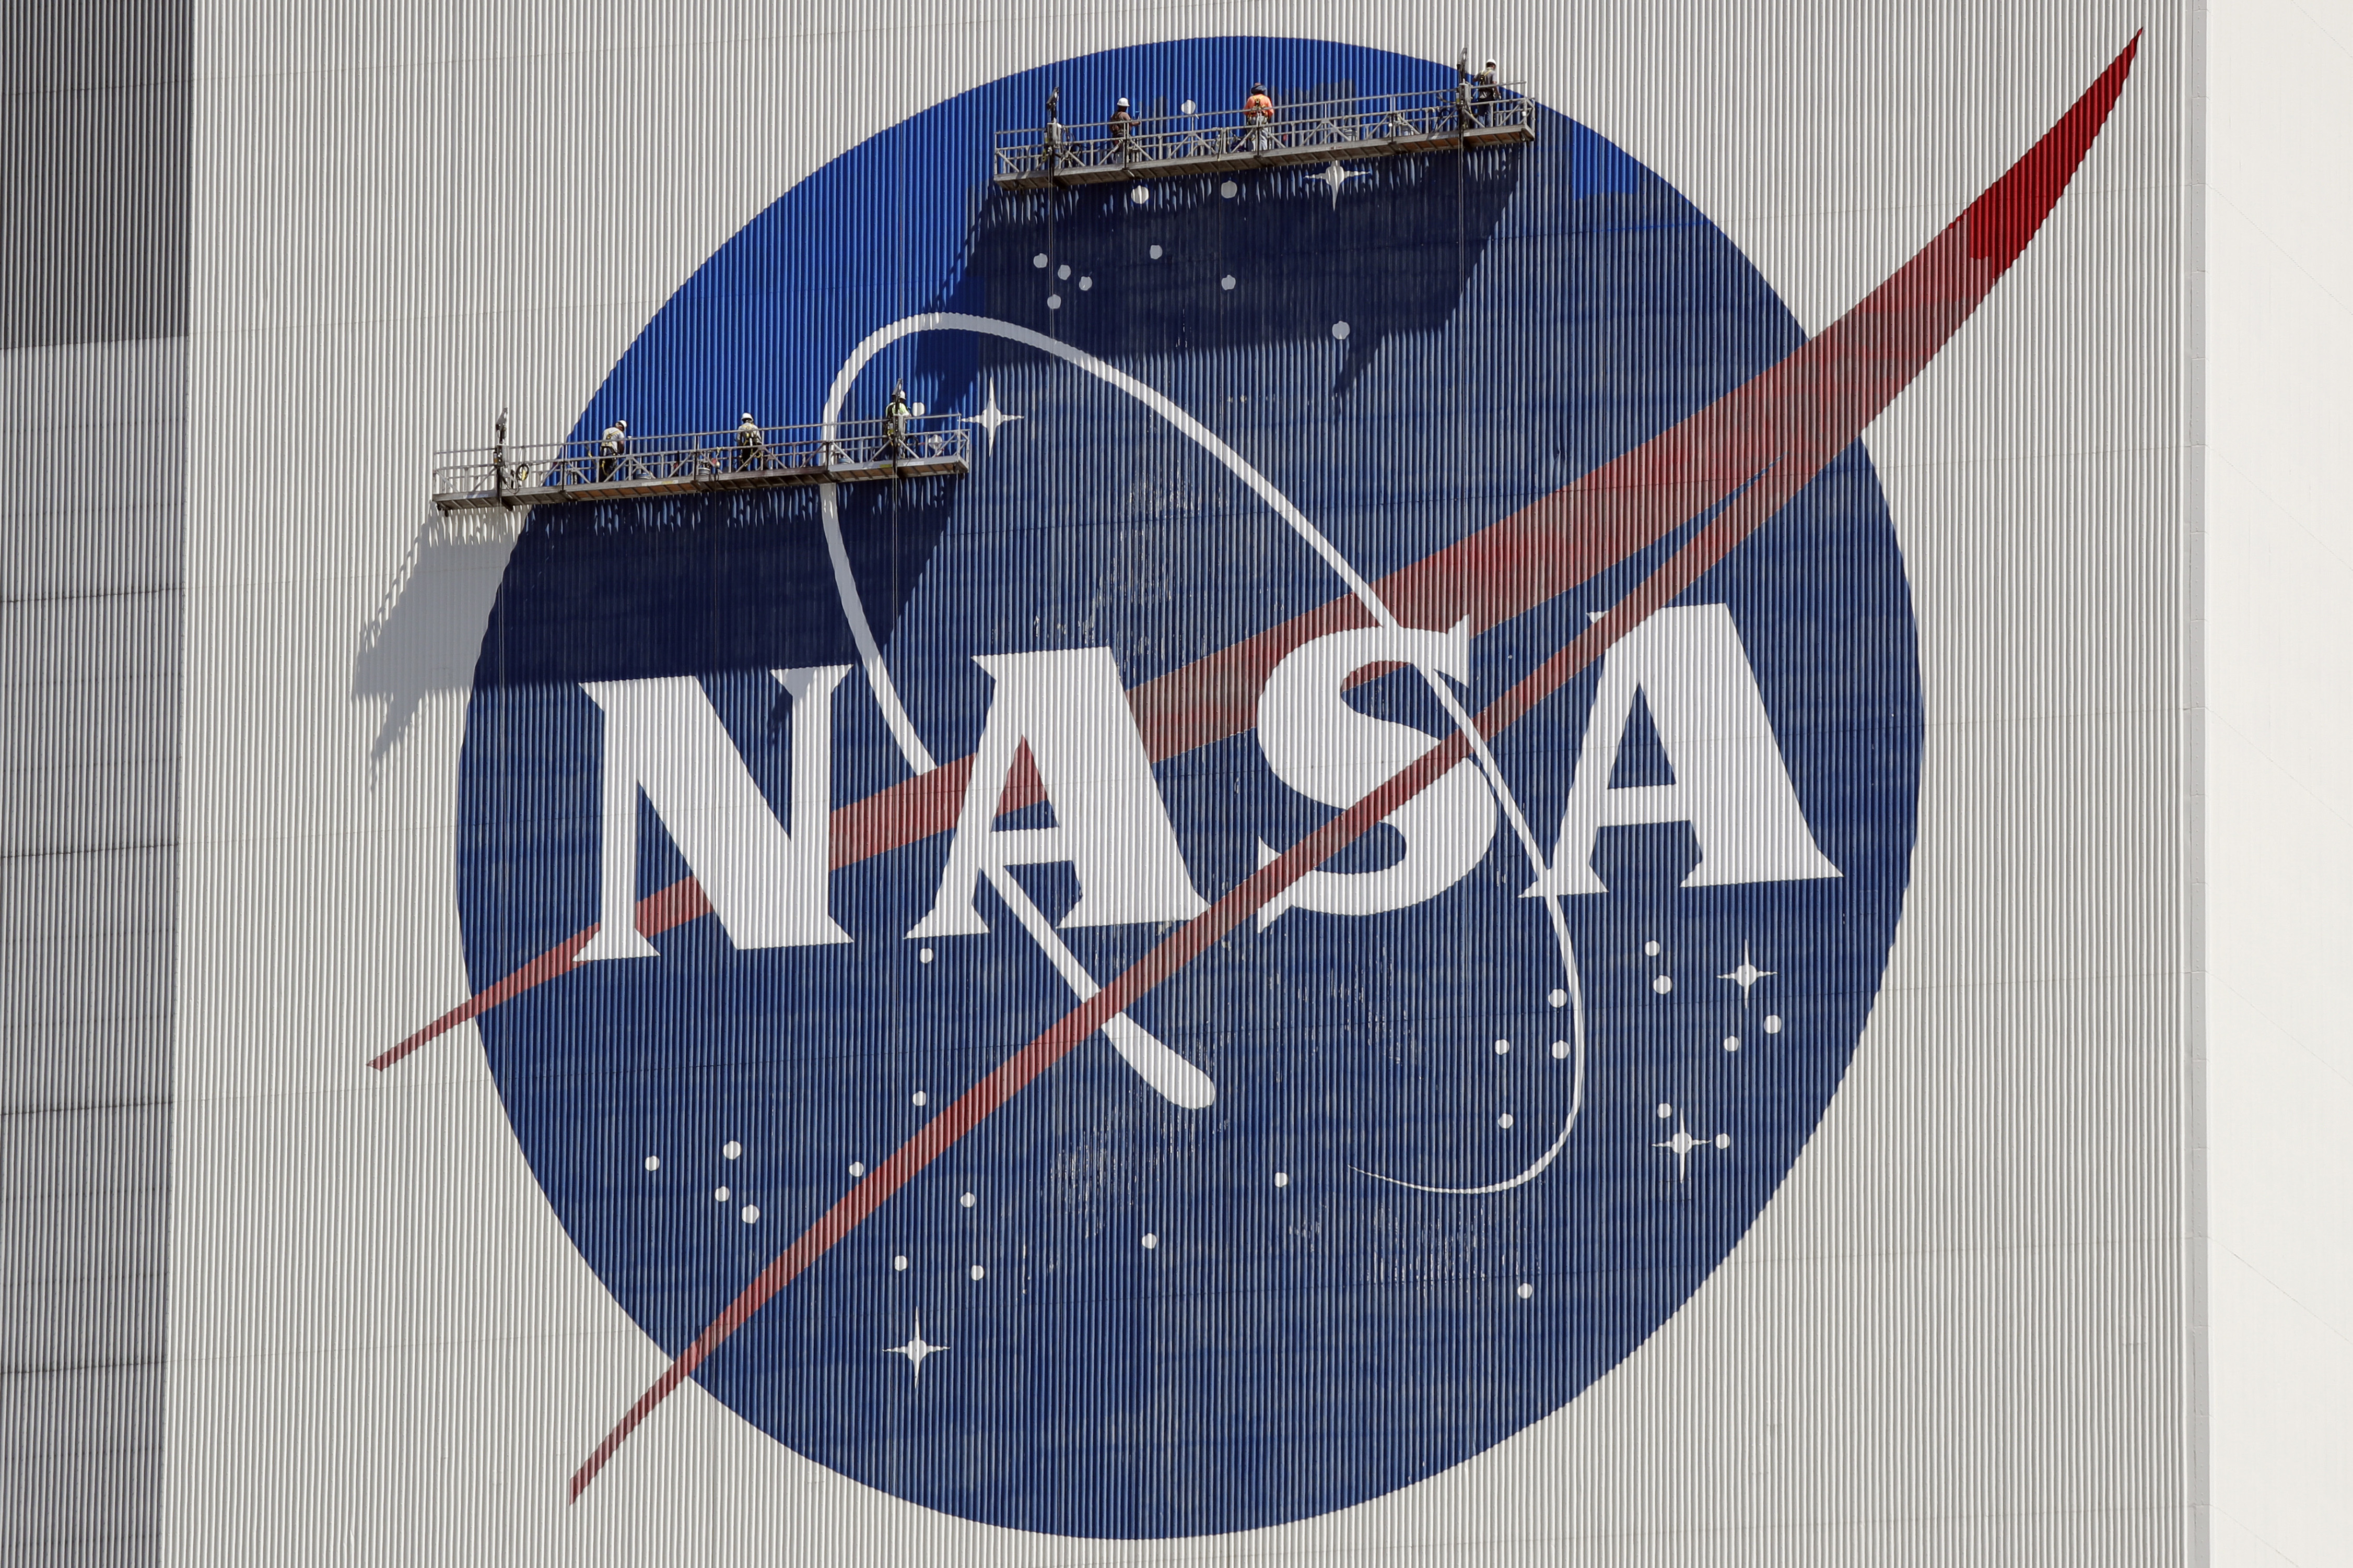 La NASA habla sobre OVNIs antes de informe final